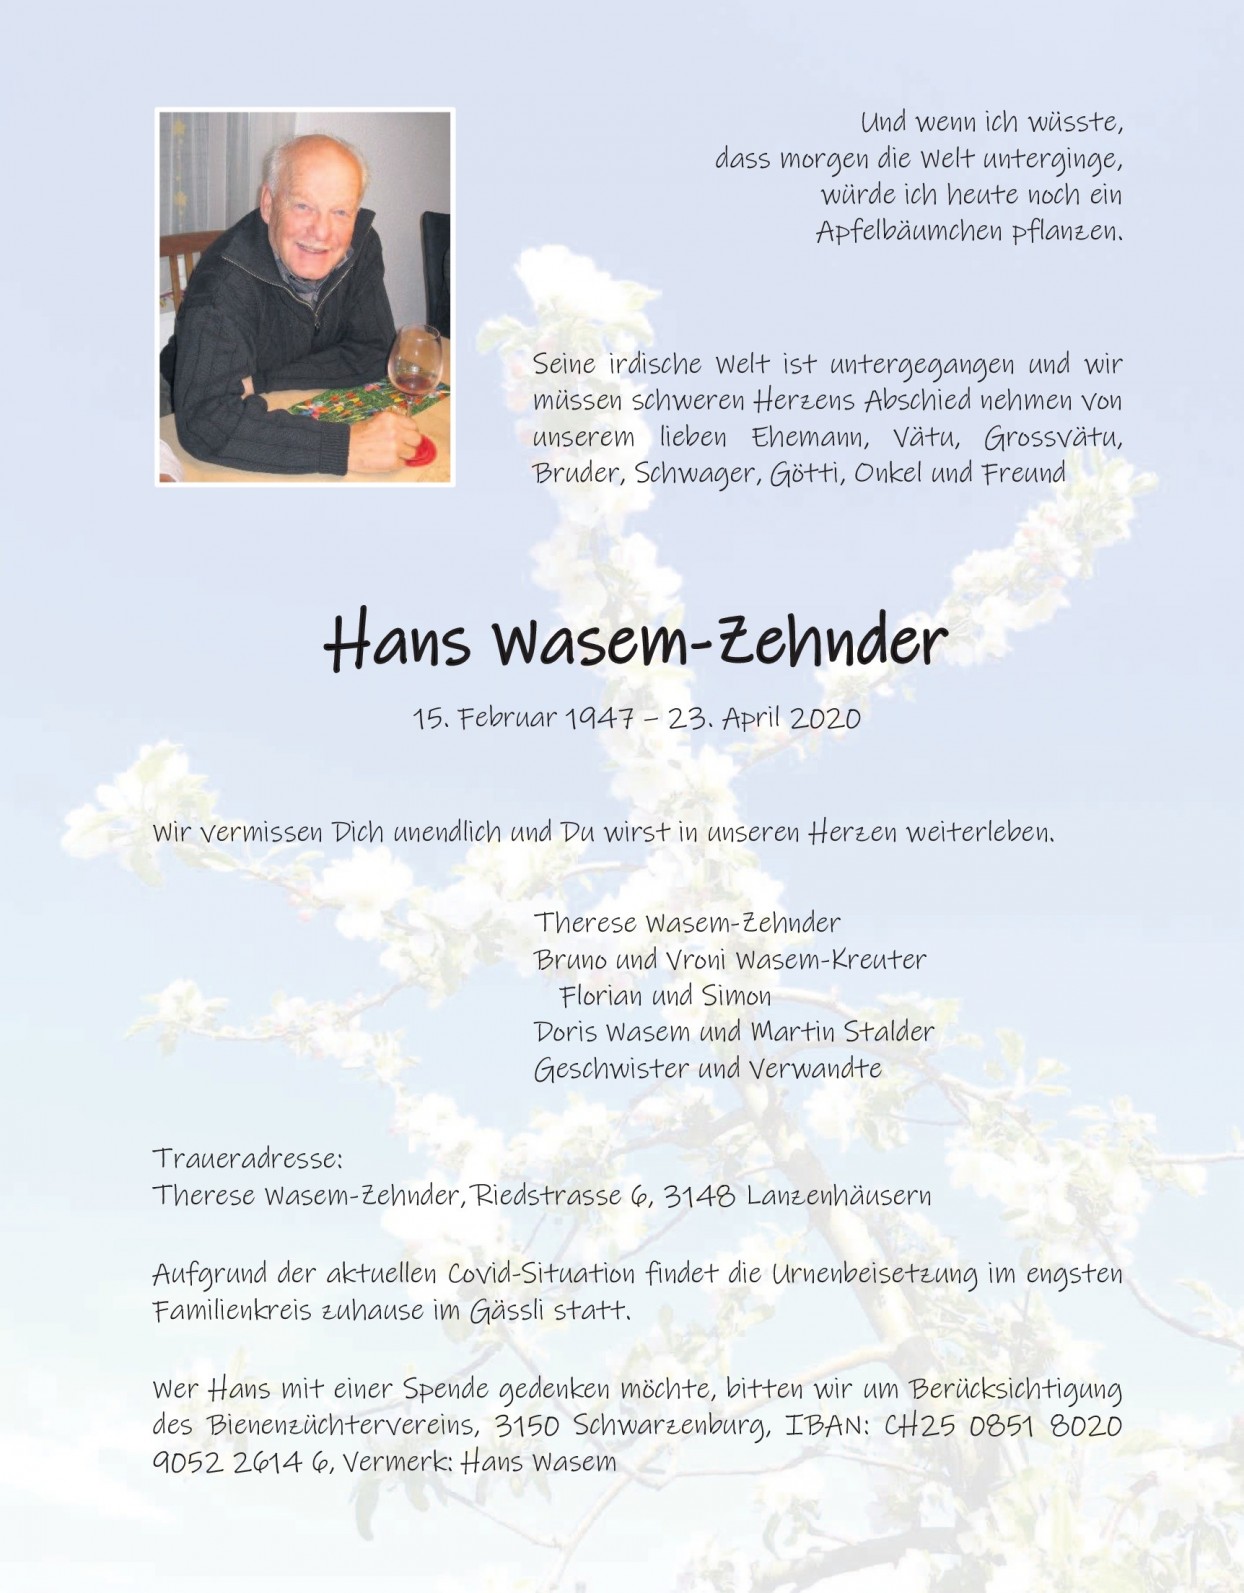 Hans Wasem-Zehnder